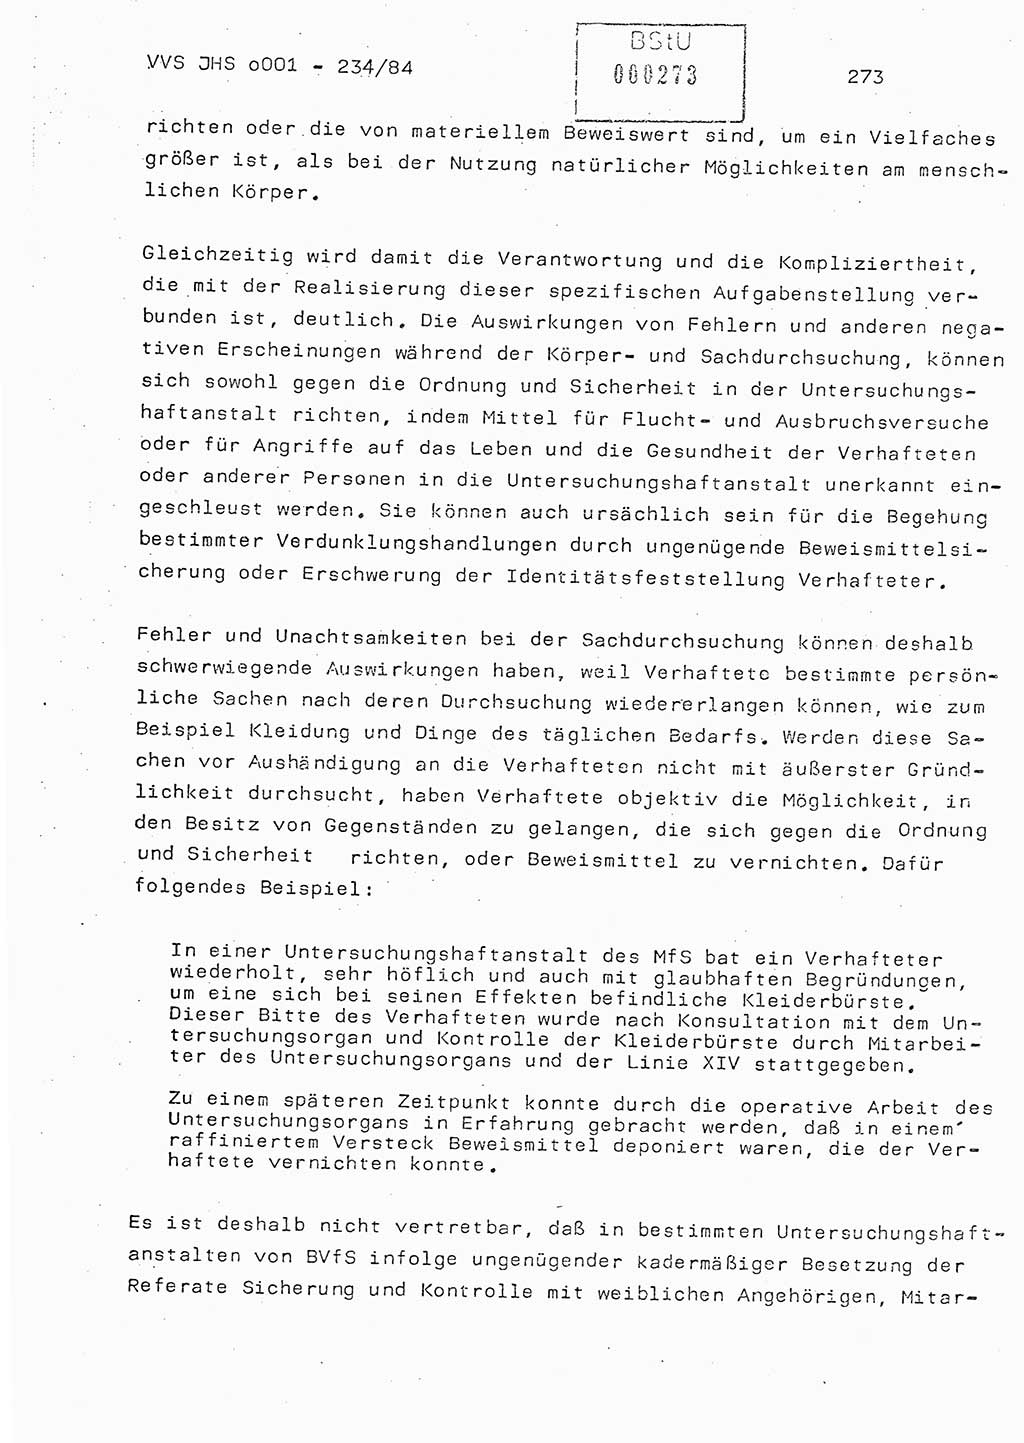 Dissertation Oberst Siegfried Rataizick (Abt. ⅩⅣ), Oberstleutnant Volkmar Heinz (Abt. ⅩⅣ), Oberstleutnant Werner Stein (HA Ⅸ), Hauptmann Heinz Conrad (JHS), Ministerium für Staatssicherheit (MfS) [Deutsche Demokratische Republik (DDR)], Juristische Hochschule (JHS), Vertrauliche Verschlußsache (VVS) o001-234/84, Potsdam 1984, Seite 273 (Diss. MfS DDR JHS VVS o001-234/84 1984, S. 273)